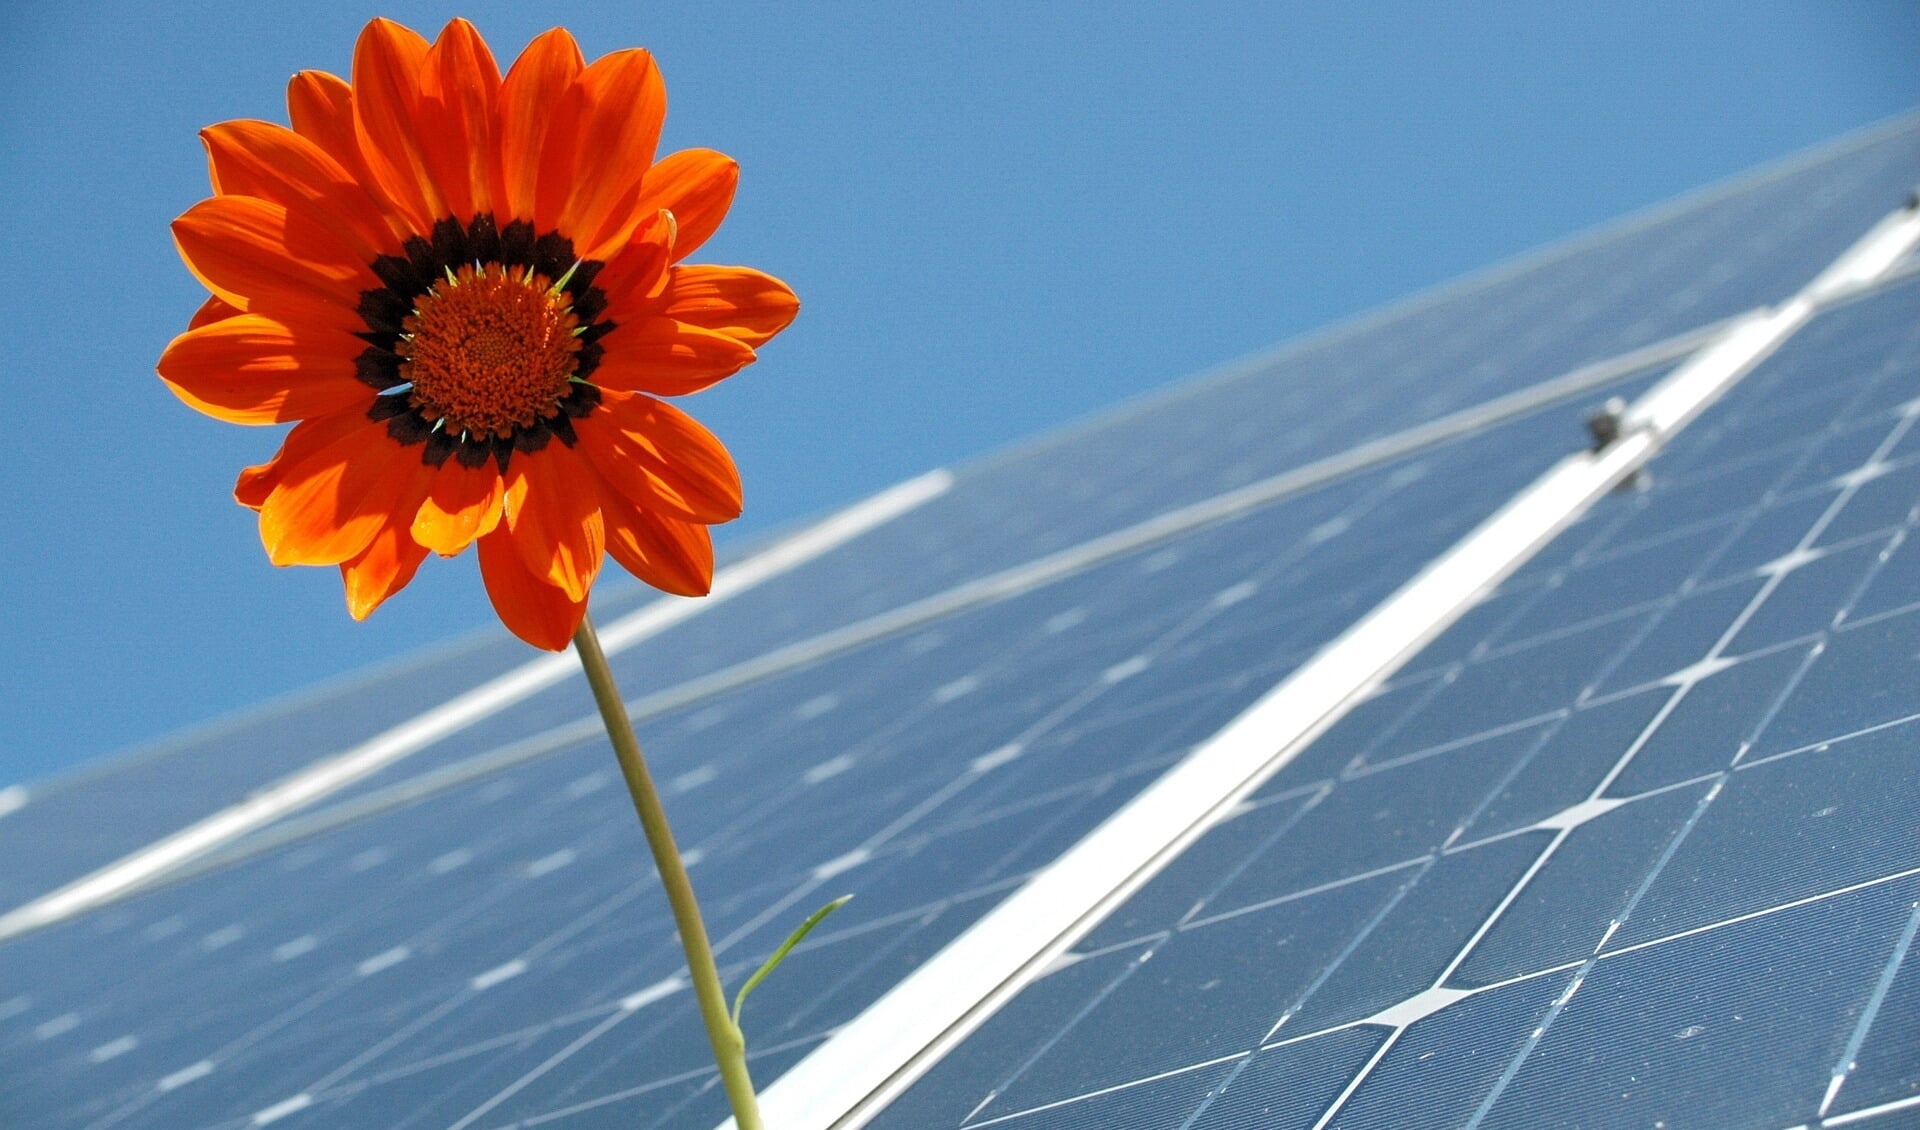 Bedrijven zijn op allerlei manieren bezig met duurzaamheid. Een van de bekendste is wel het plaatsen van zonnepanelen.